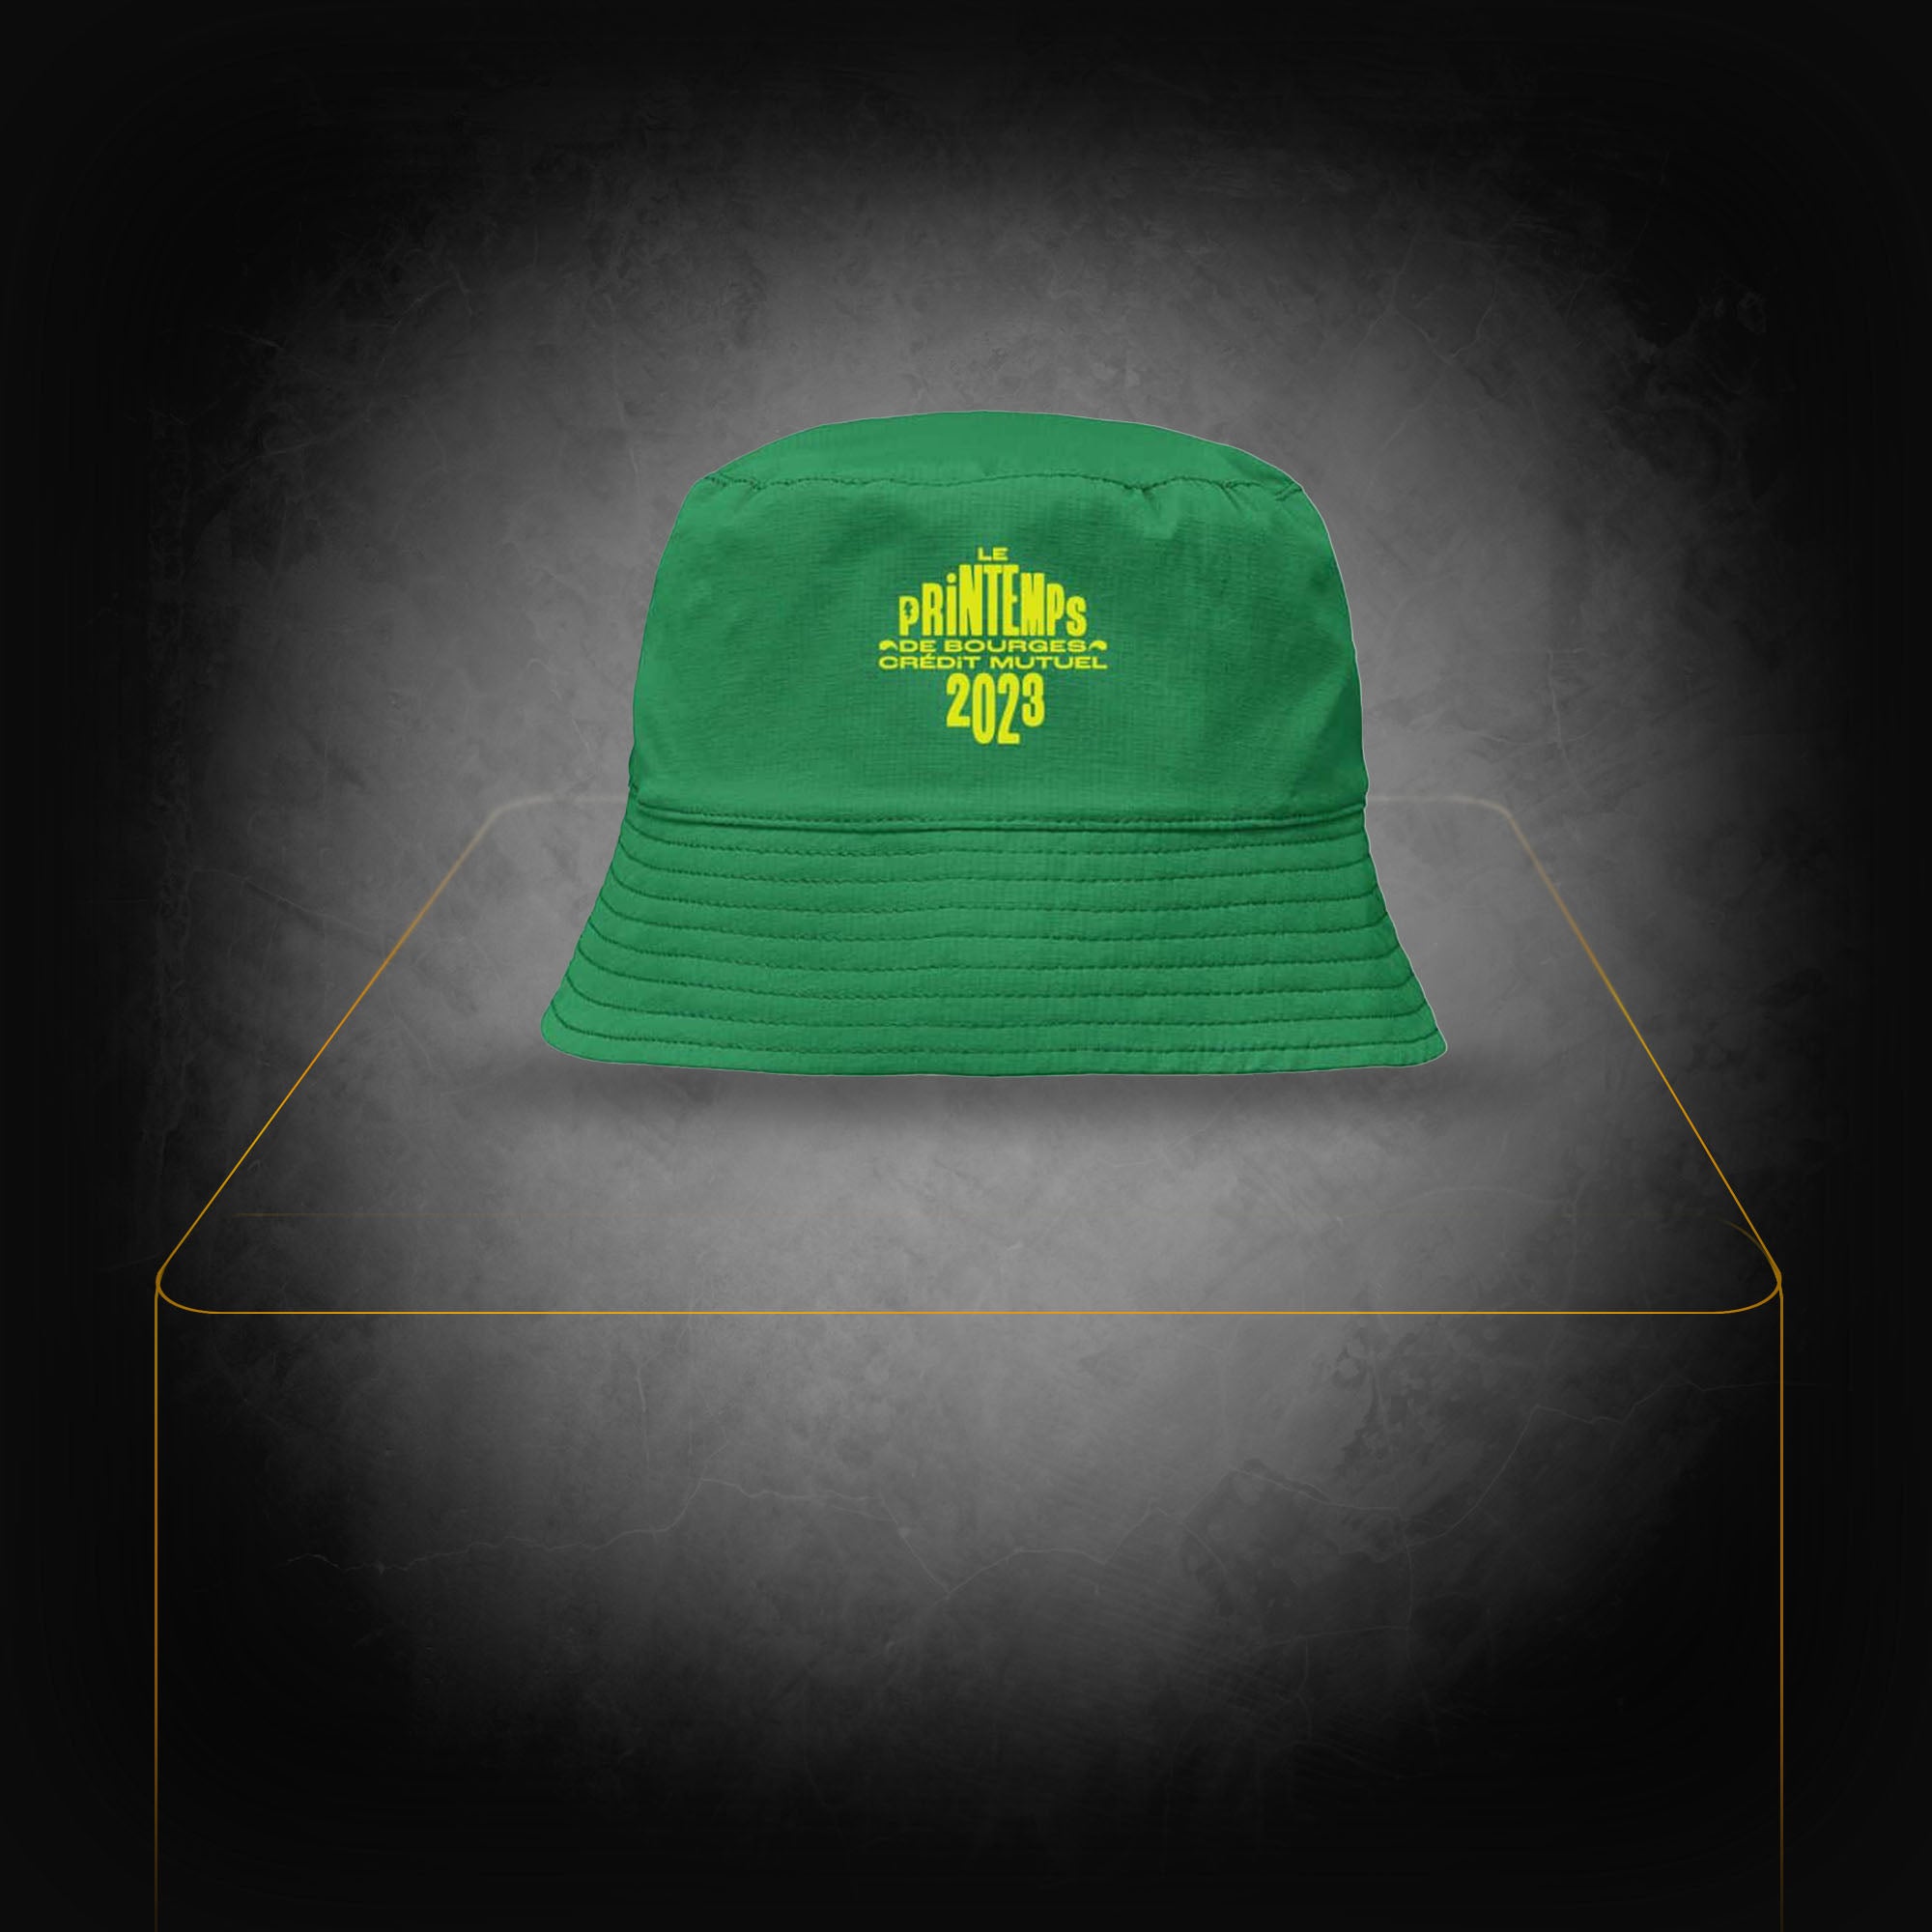 Green bucket hat - Le Printemps de Bourges Crédit Mutuel